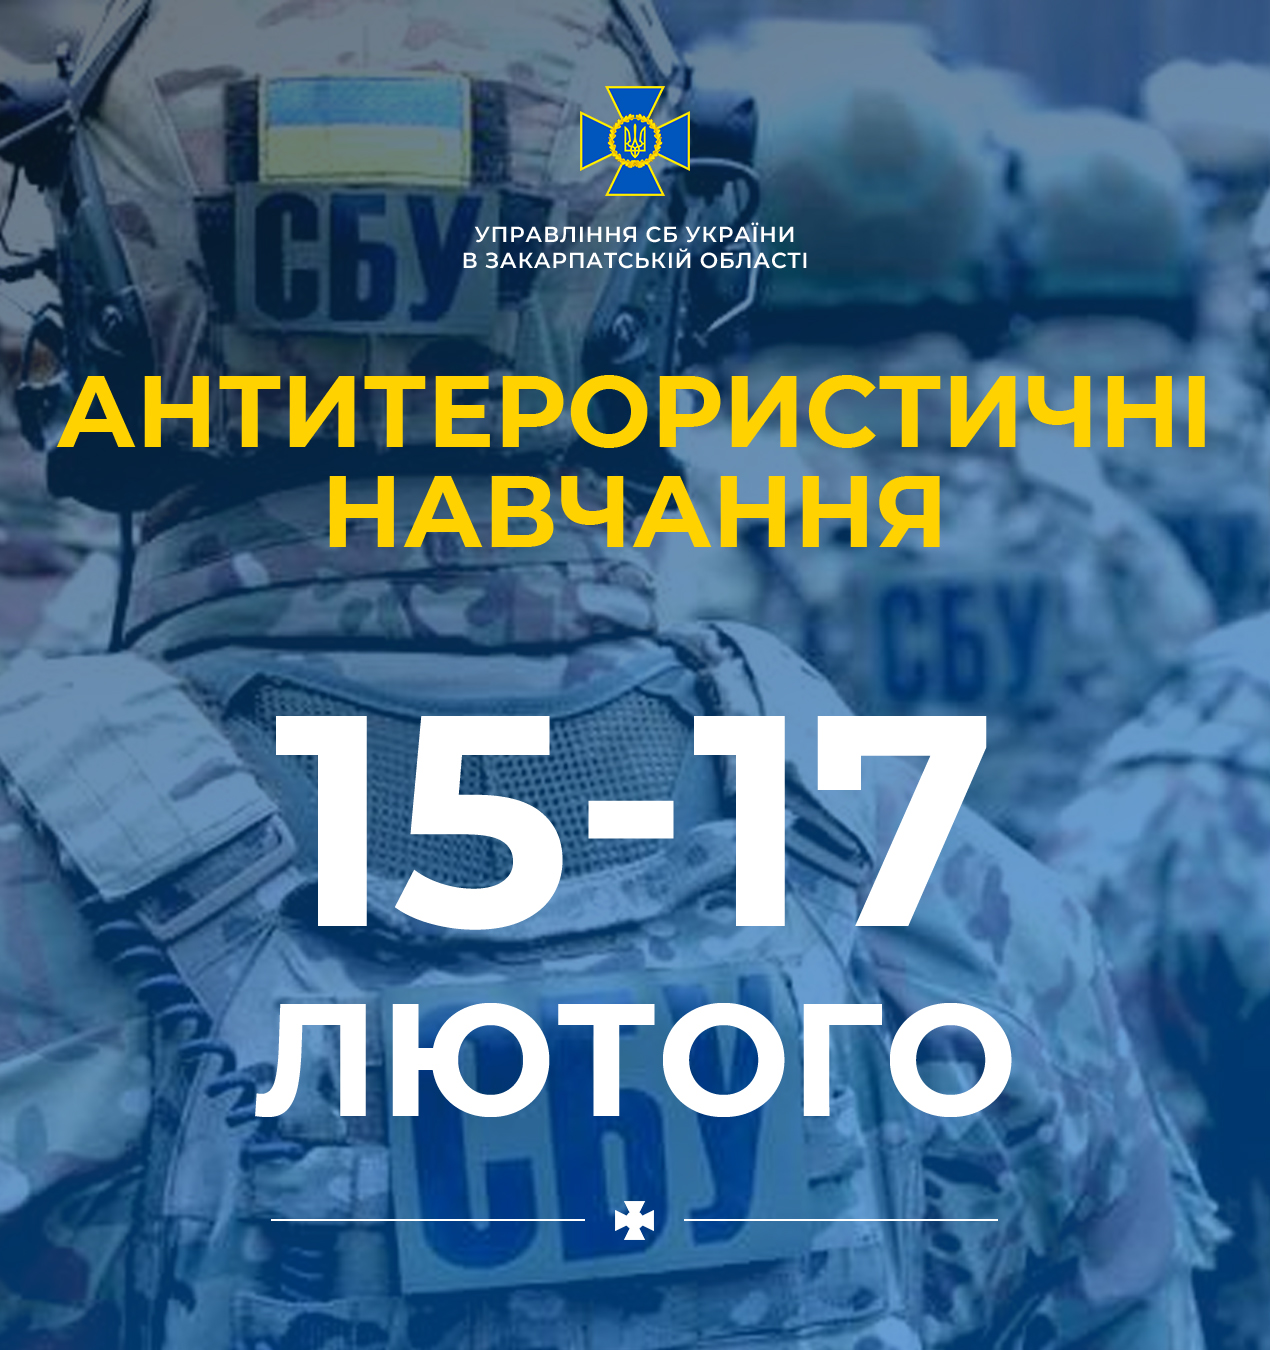 С 15 по 17 февраля 2022 года координационная группа Антитеррористического центра при Управлении Службы безопасности Украины в Закарпатской области проведет плановые тактико-специальные учения.